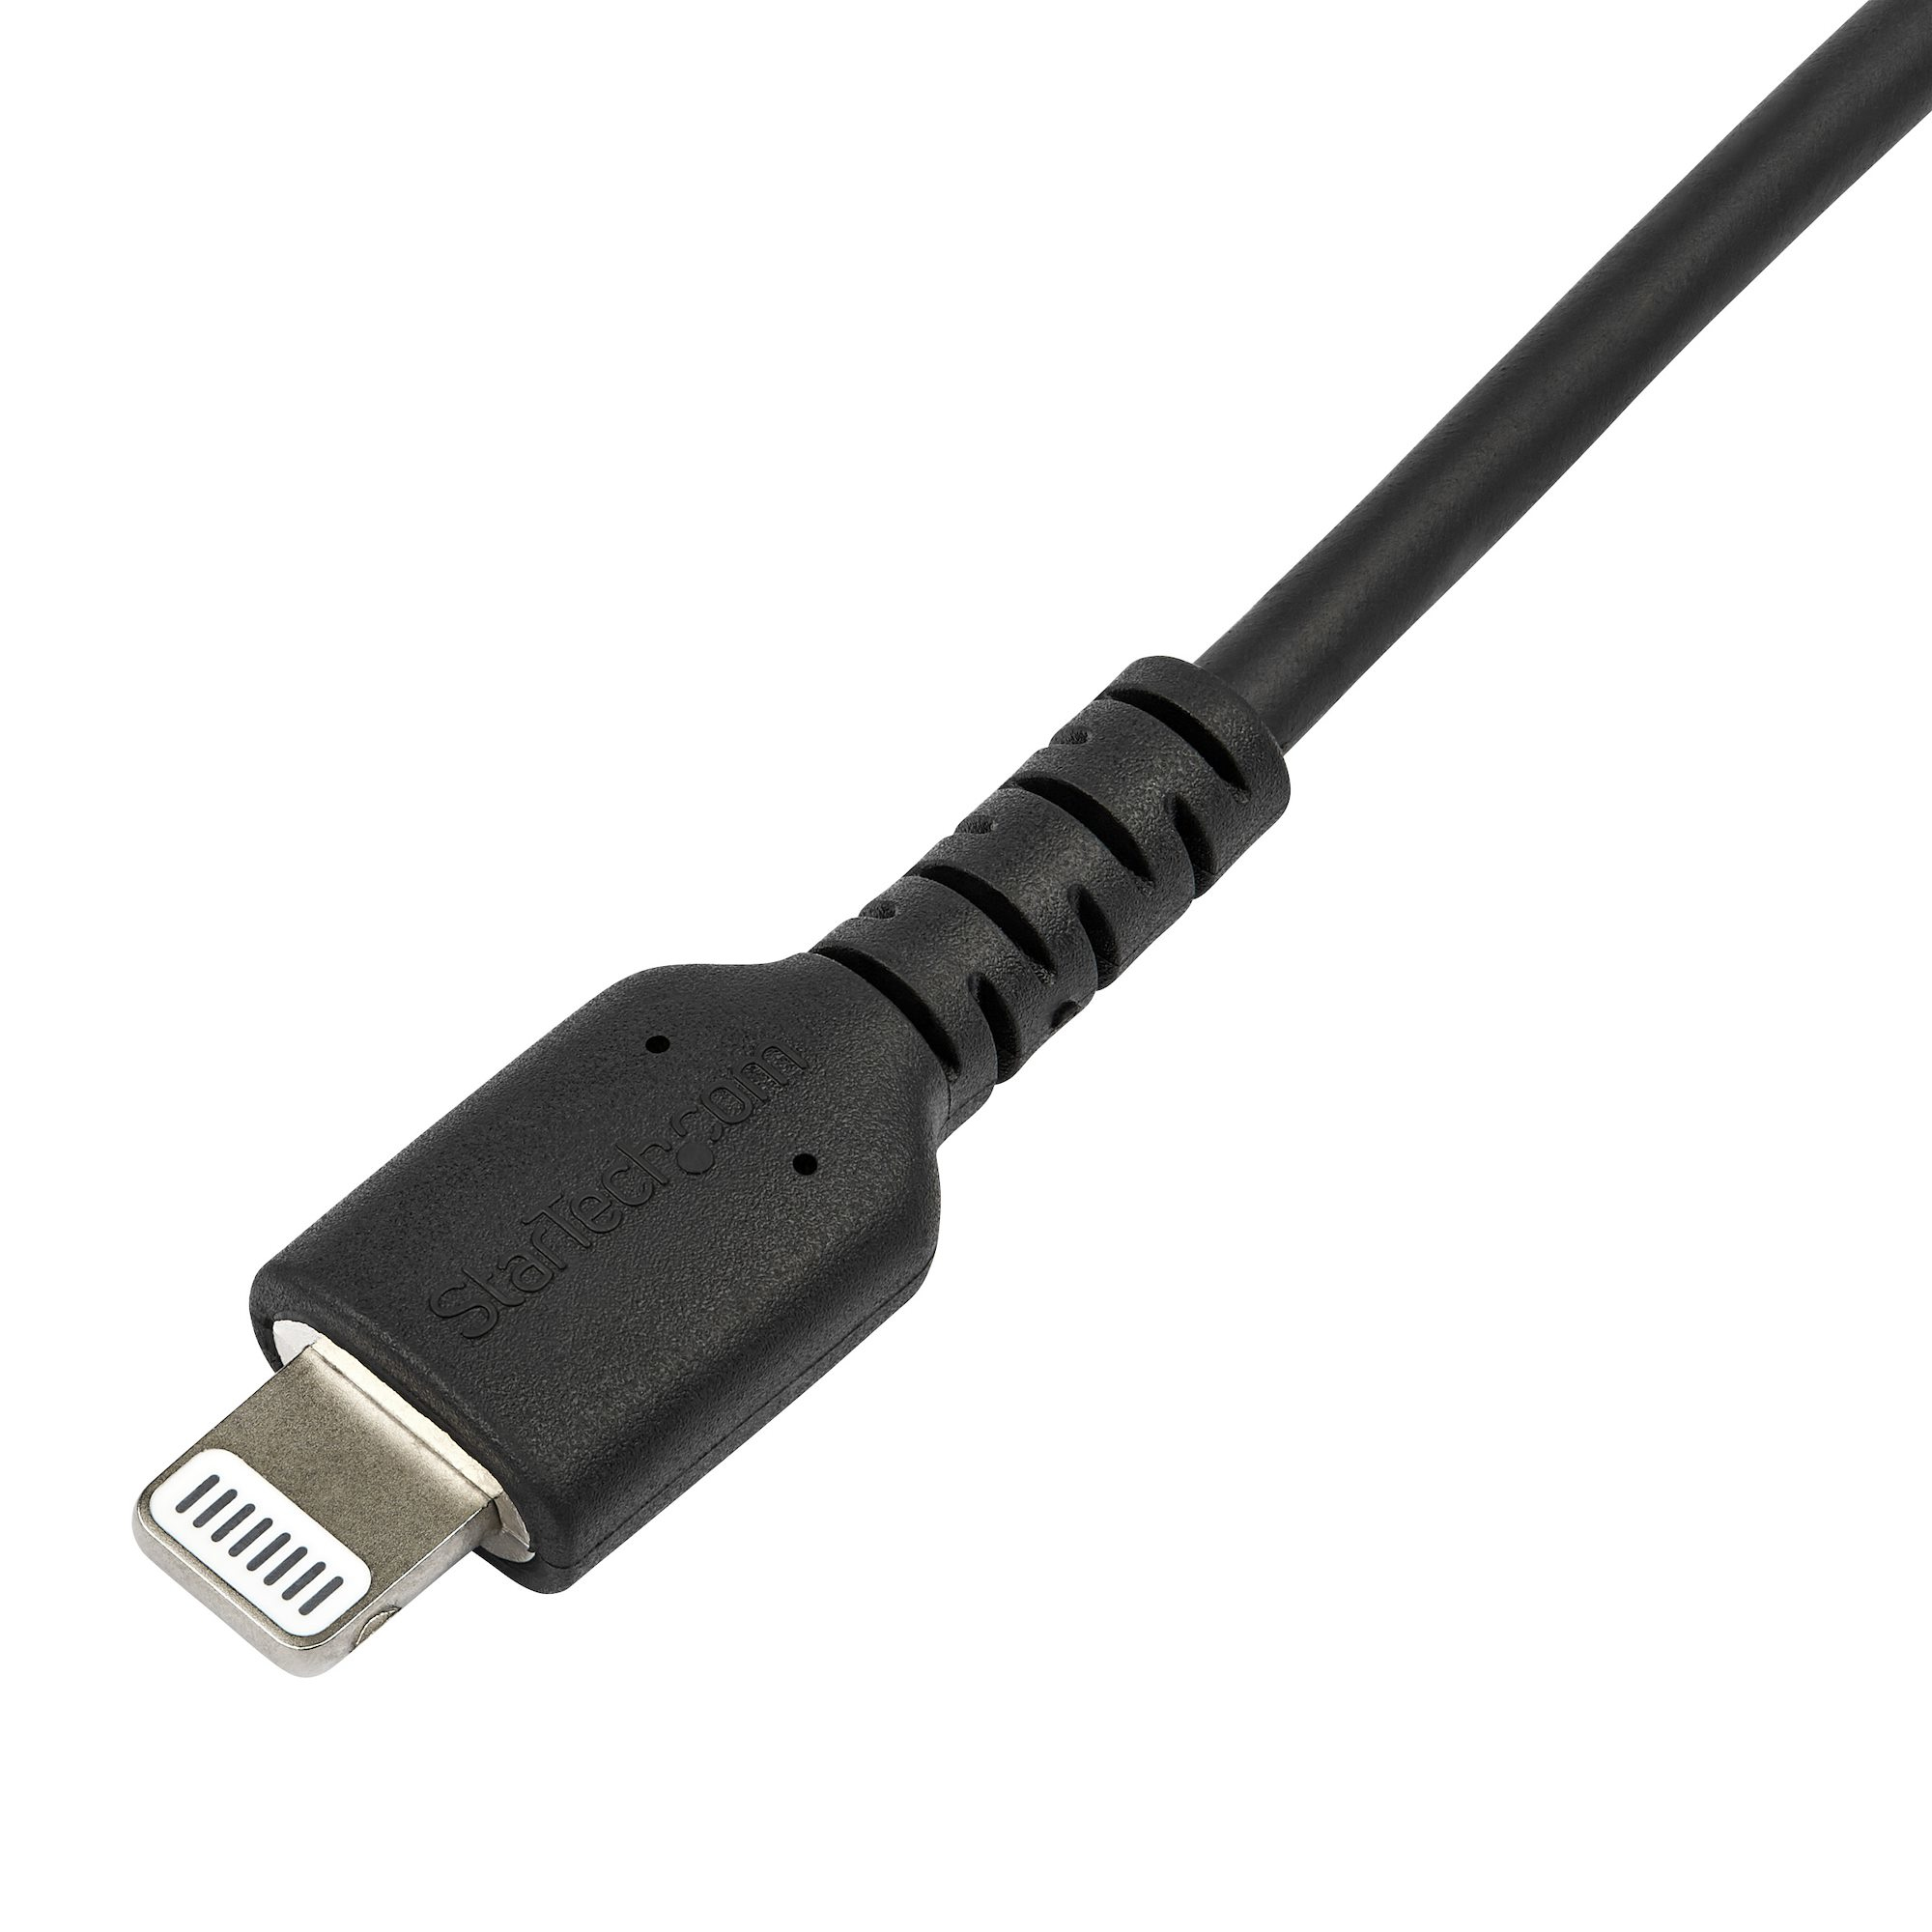 Cable Startech para iPhone / iPad / iPod de Carga Rápida Certificación MFi  de Apple - Negro